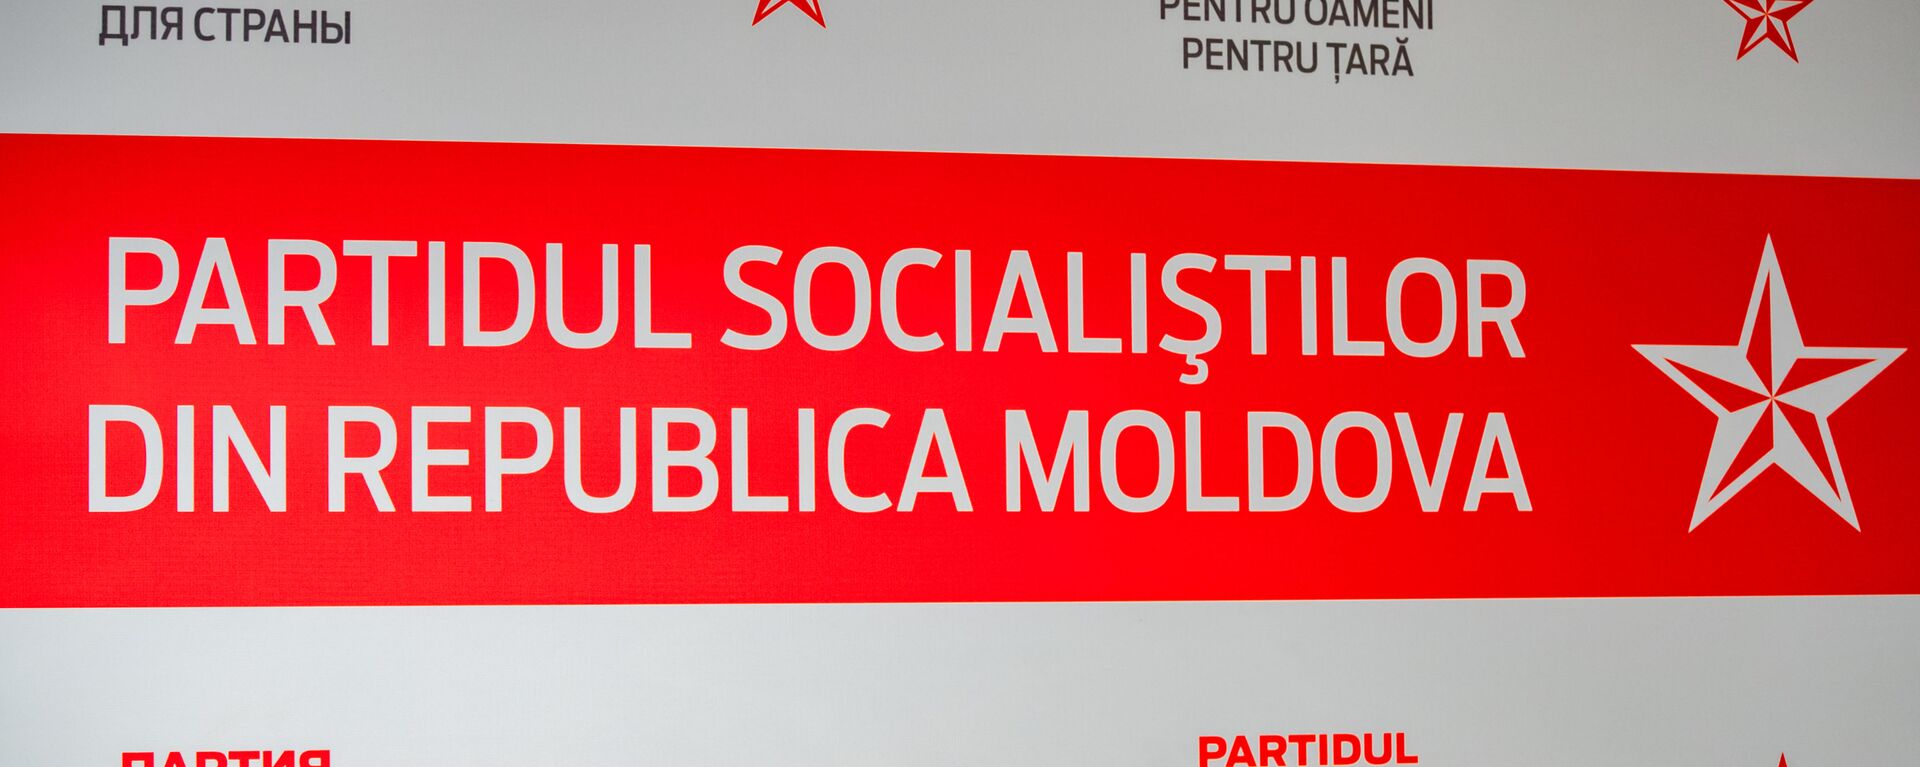 Partidul Socialiștilor din Republica Moldova - Sputnik Moldova, 1920, 12.05.2021